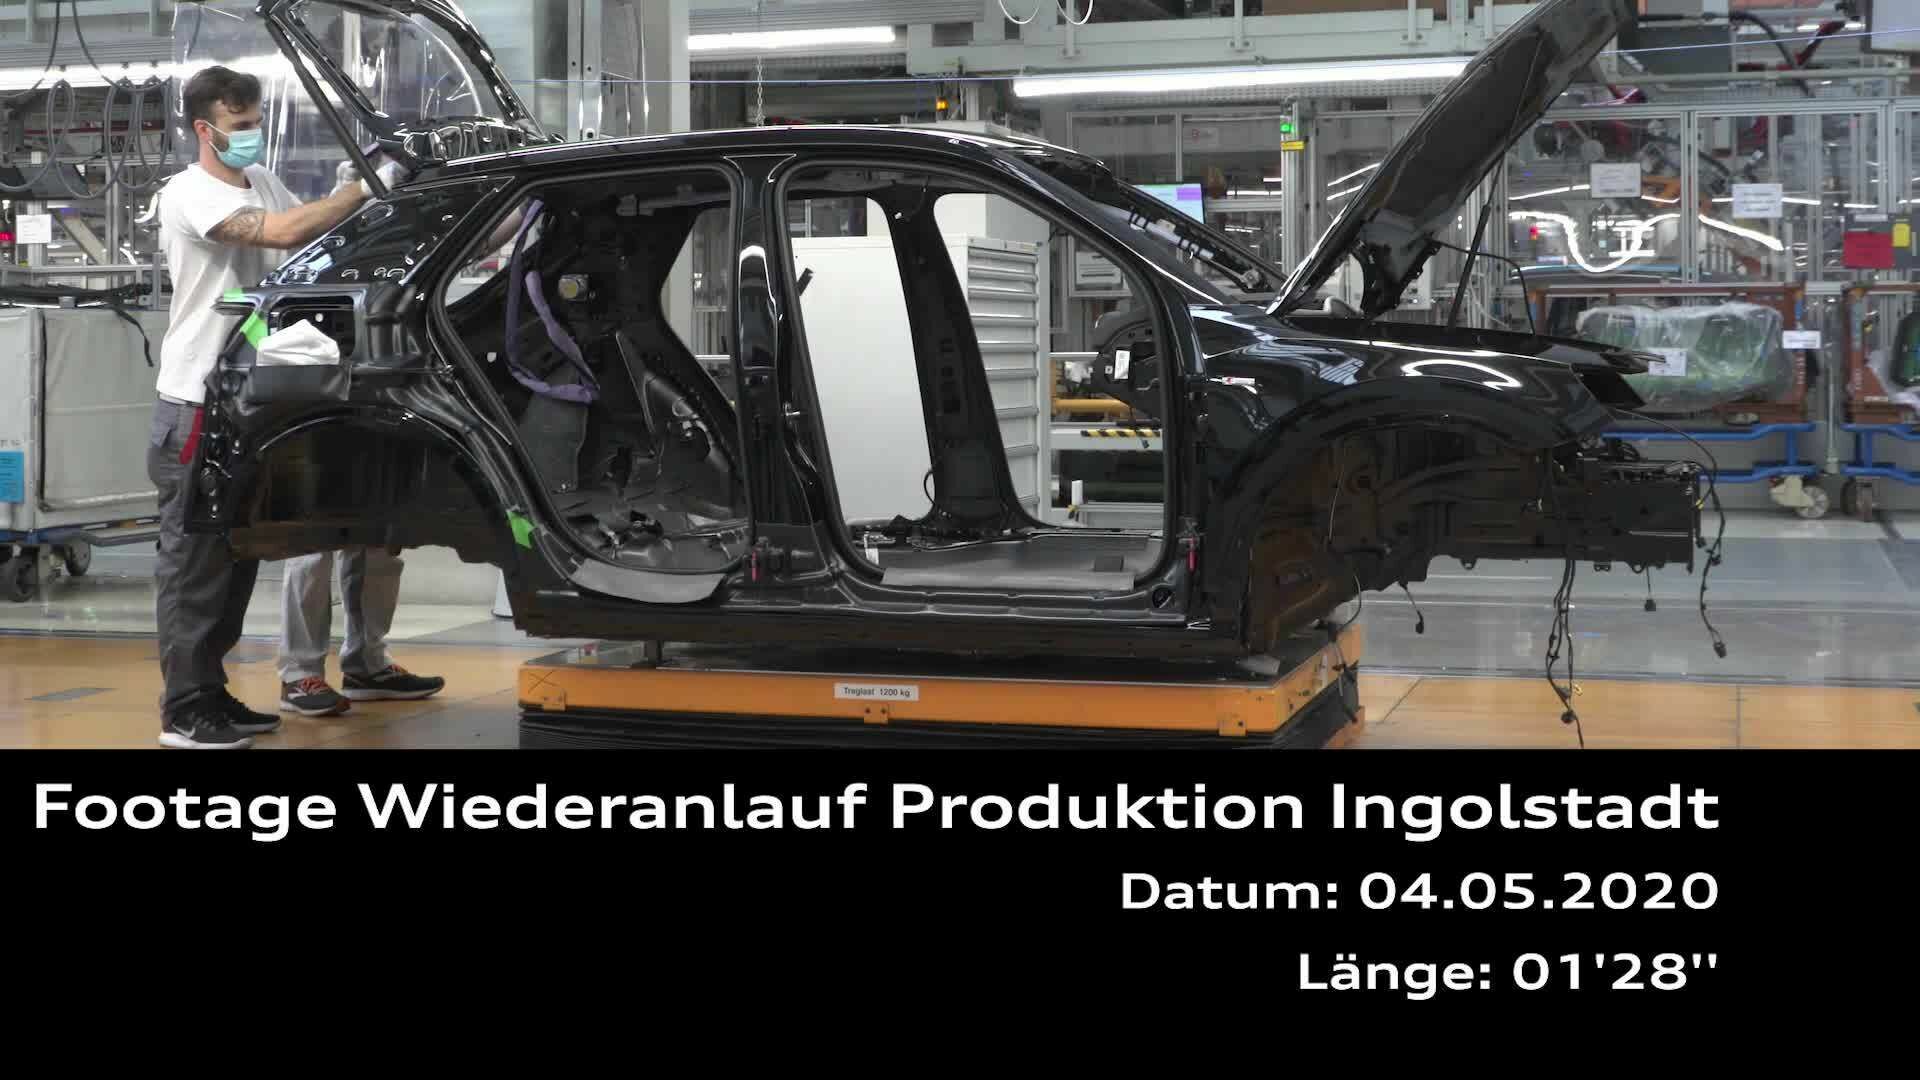 Footage: Wiederanlauf Produktion Ingolstadt